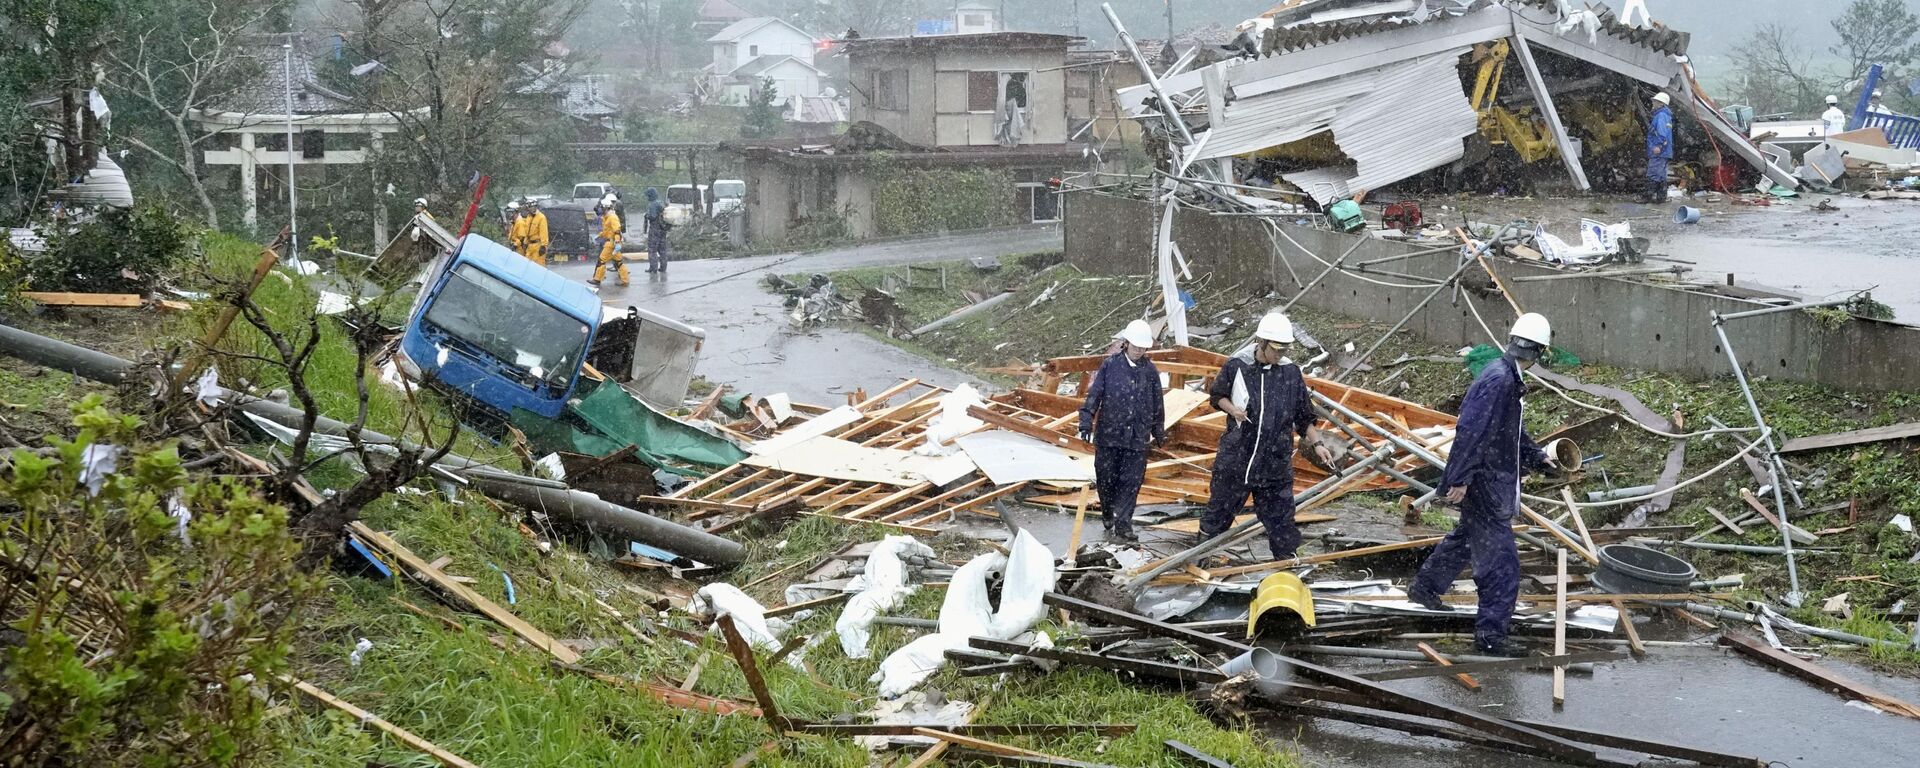 Nhà cửa, xe hơi và cột điện bị phá hủy bởi cơn bão Hagibis, Nhật Bản - Sputnik Việt Nam, 1920, 18.10.2019